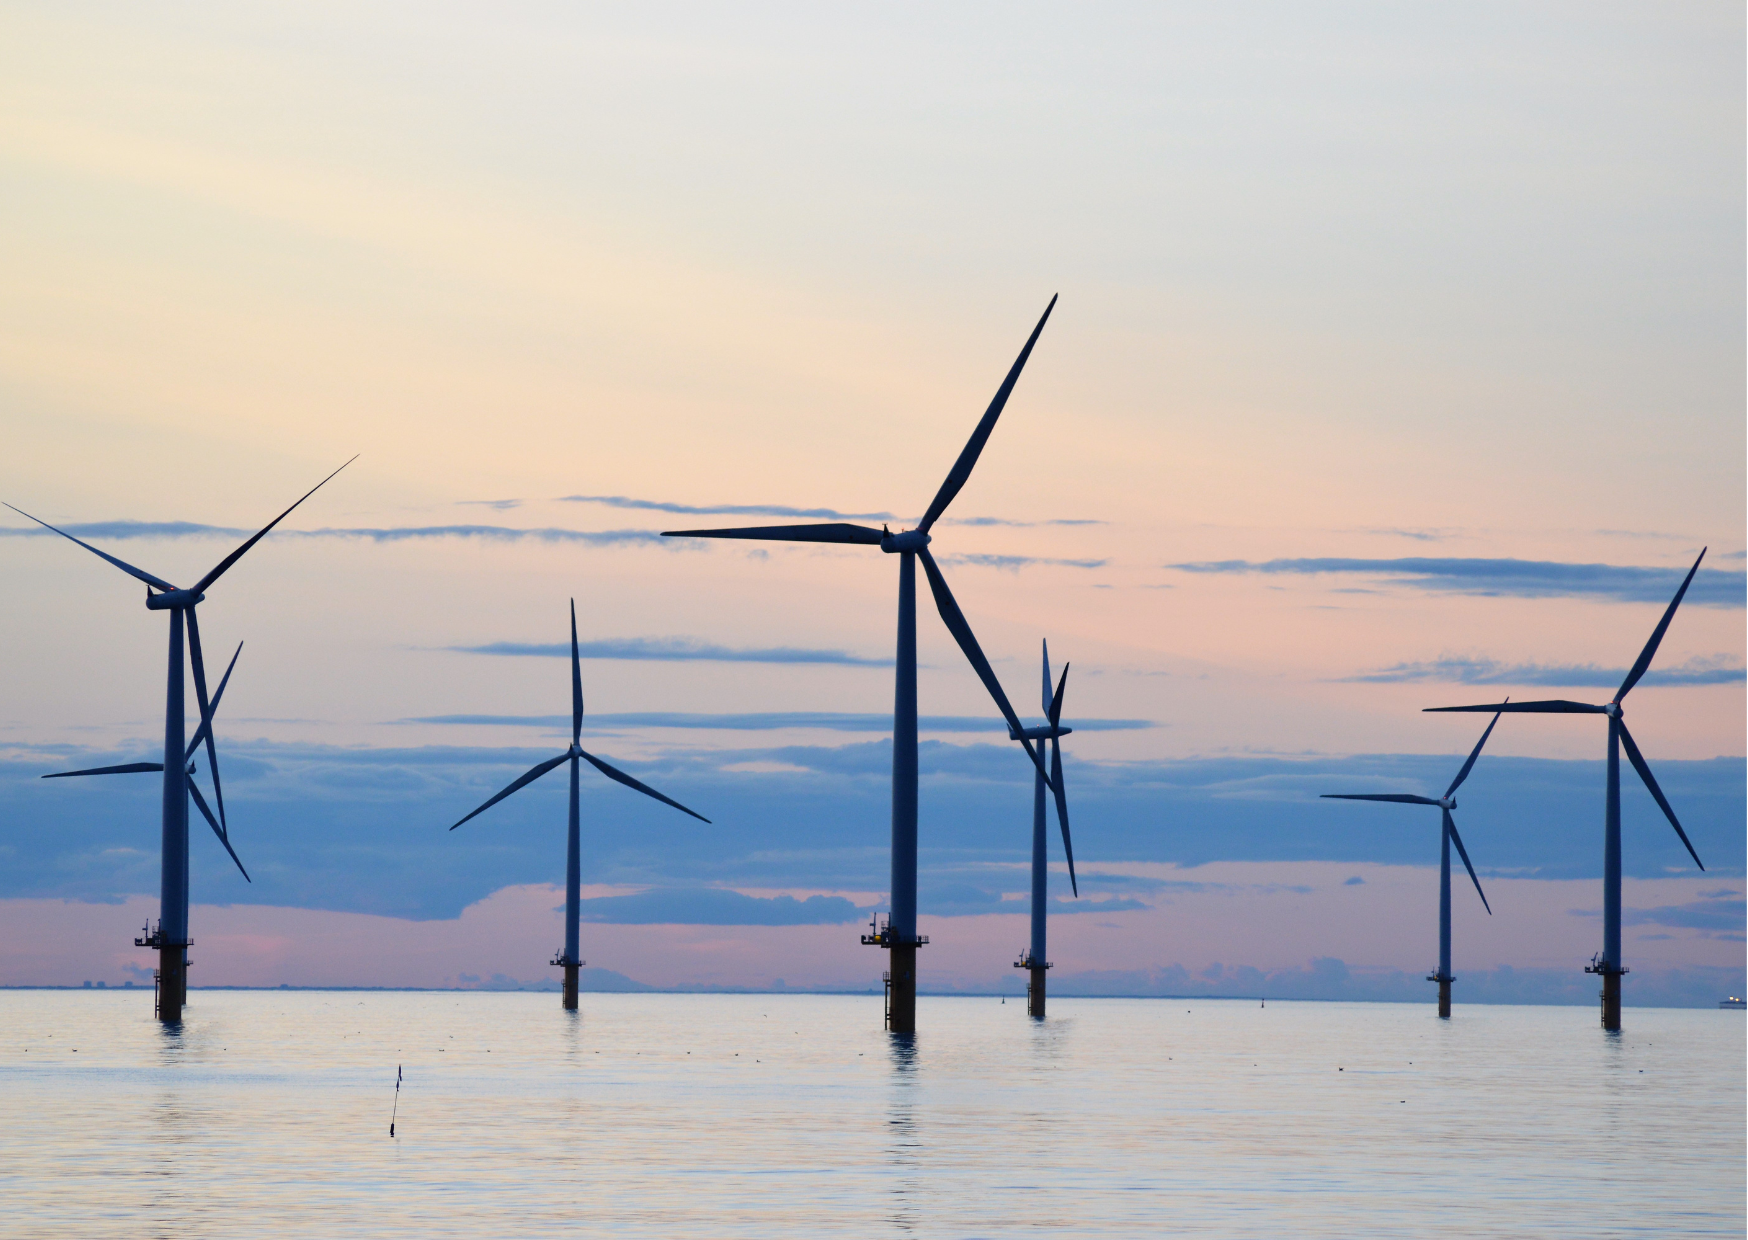 Edukacja na rzecz zrównoważonego rozwoju: morska energetyka wiatrowa. Studia podyplomowe online